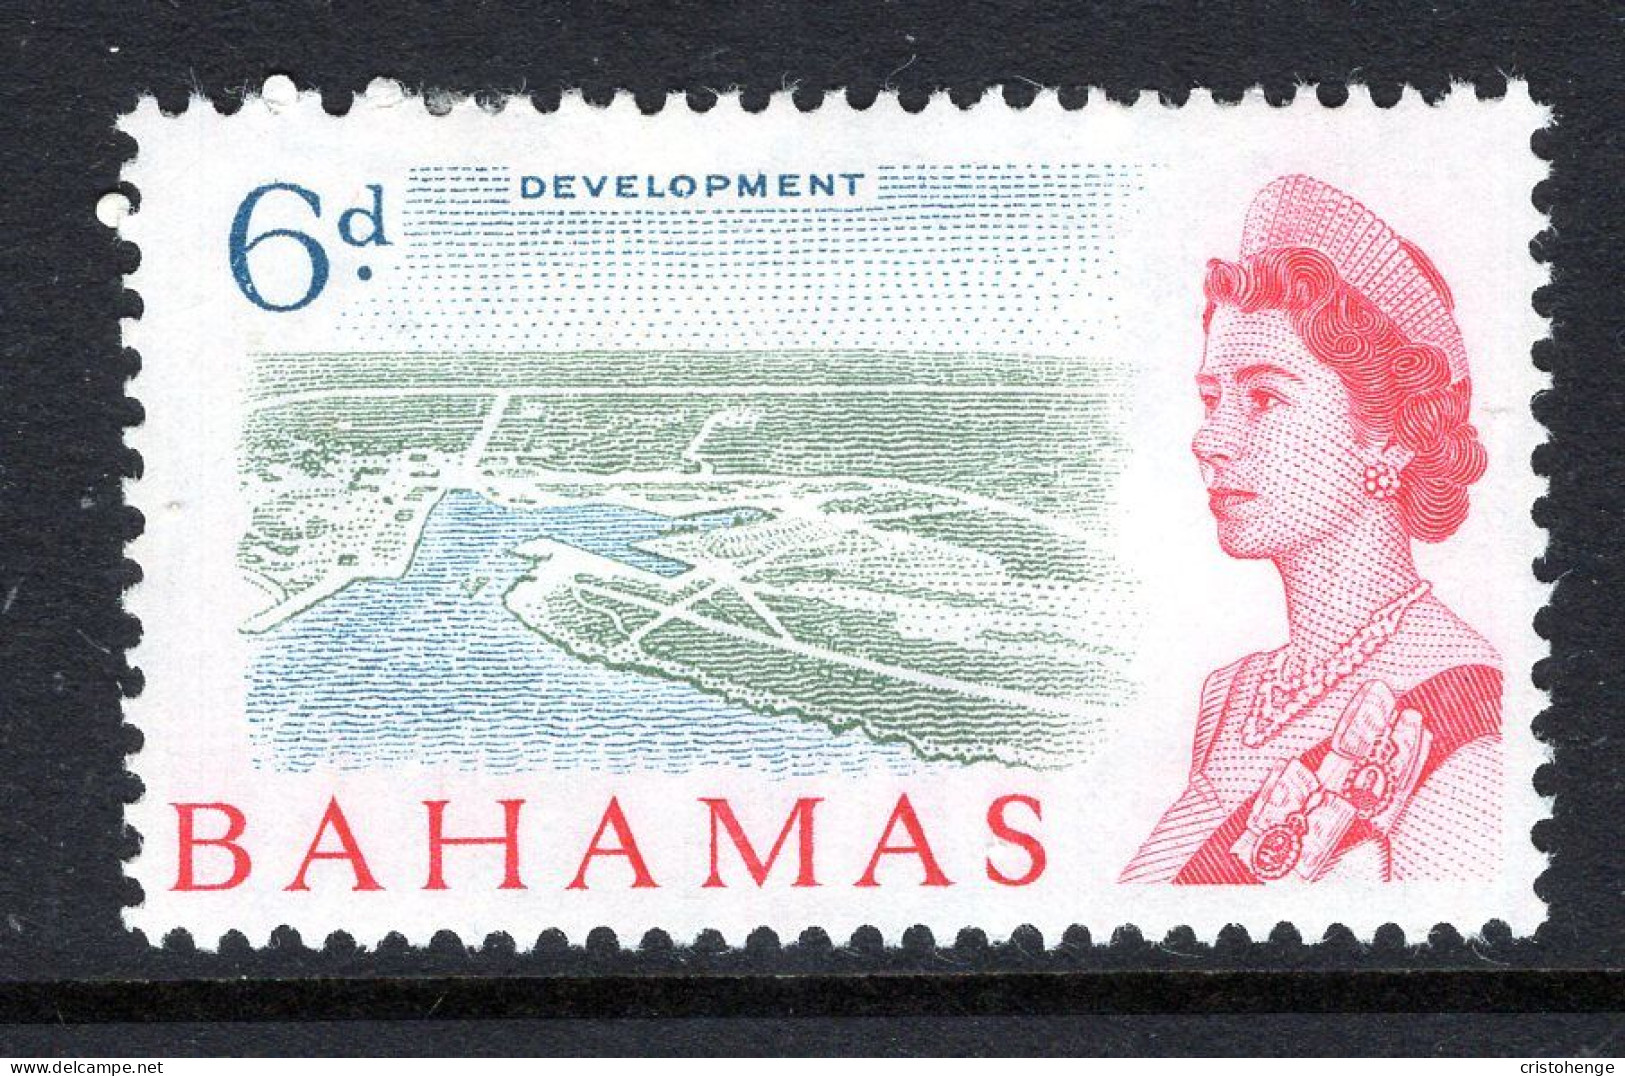 Bahamas 1965 Pictorials - 6d Development HM (SG 253) - 1963-1973 Interne Autonomie